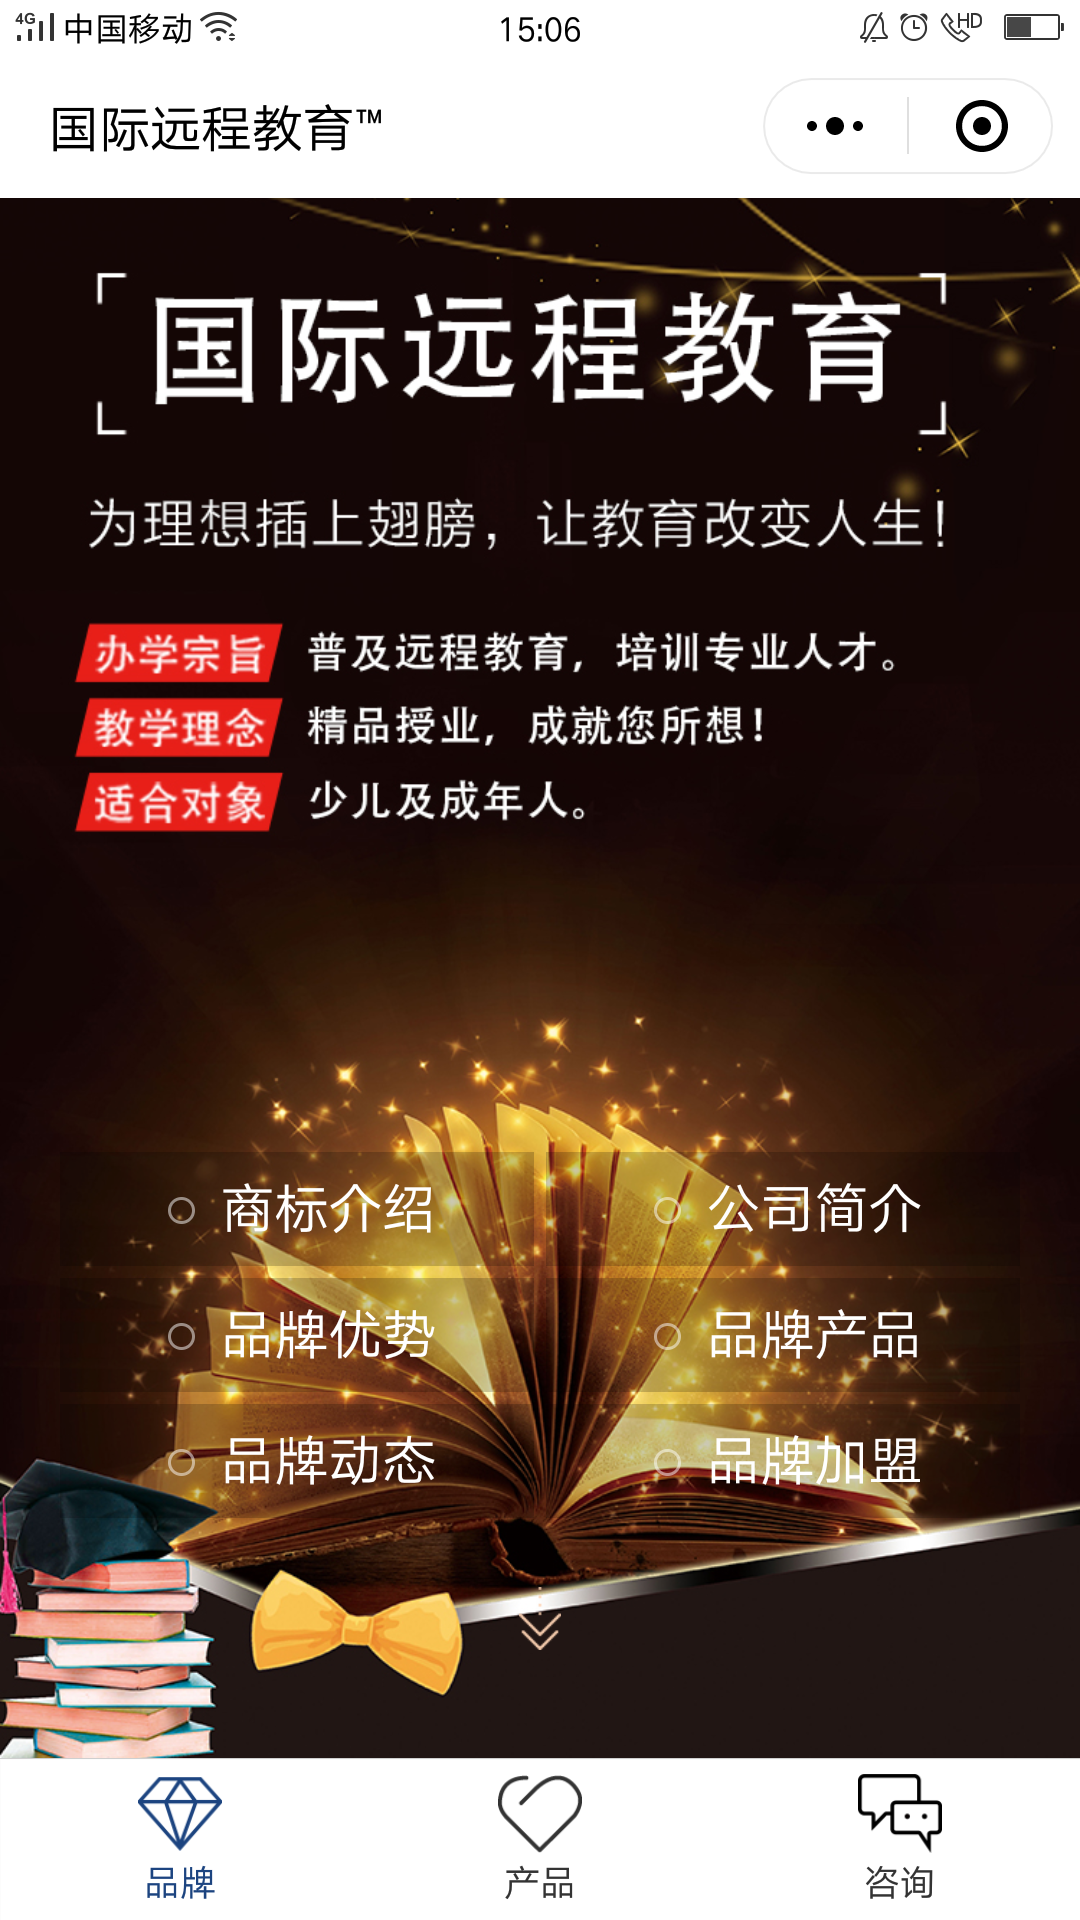 教育黑色北京-国际远程教育商标小程序高级版.png